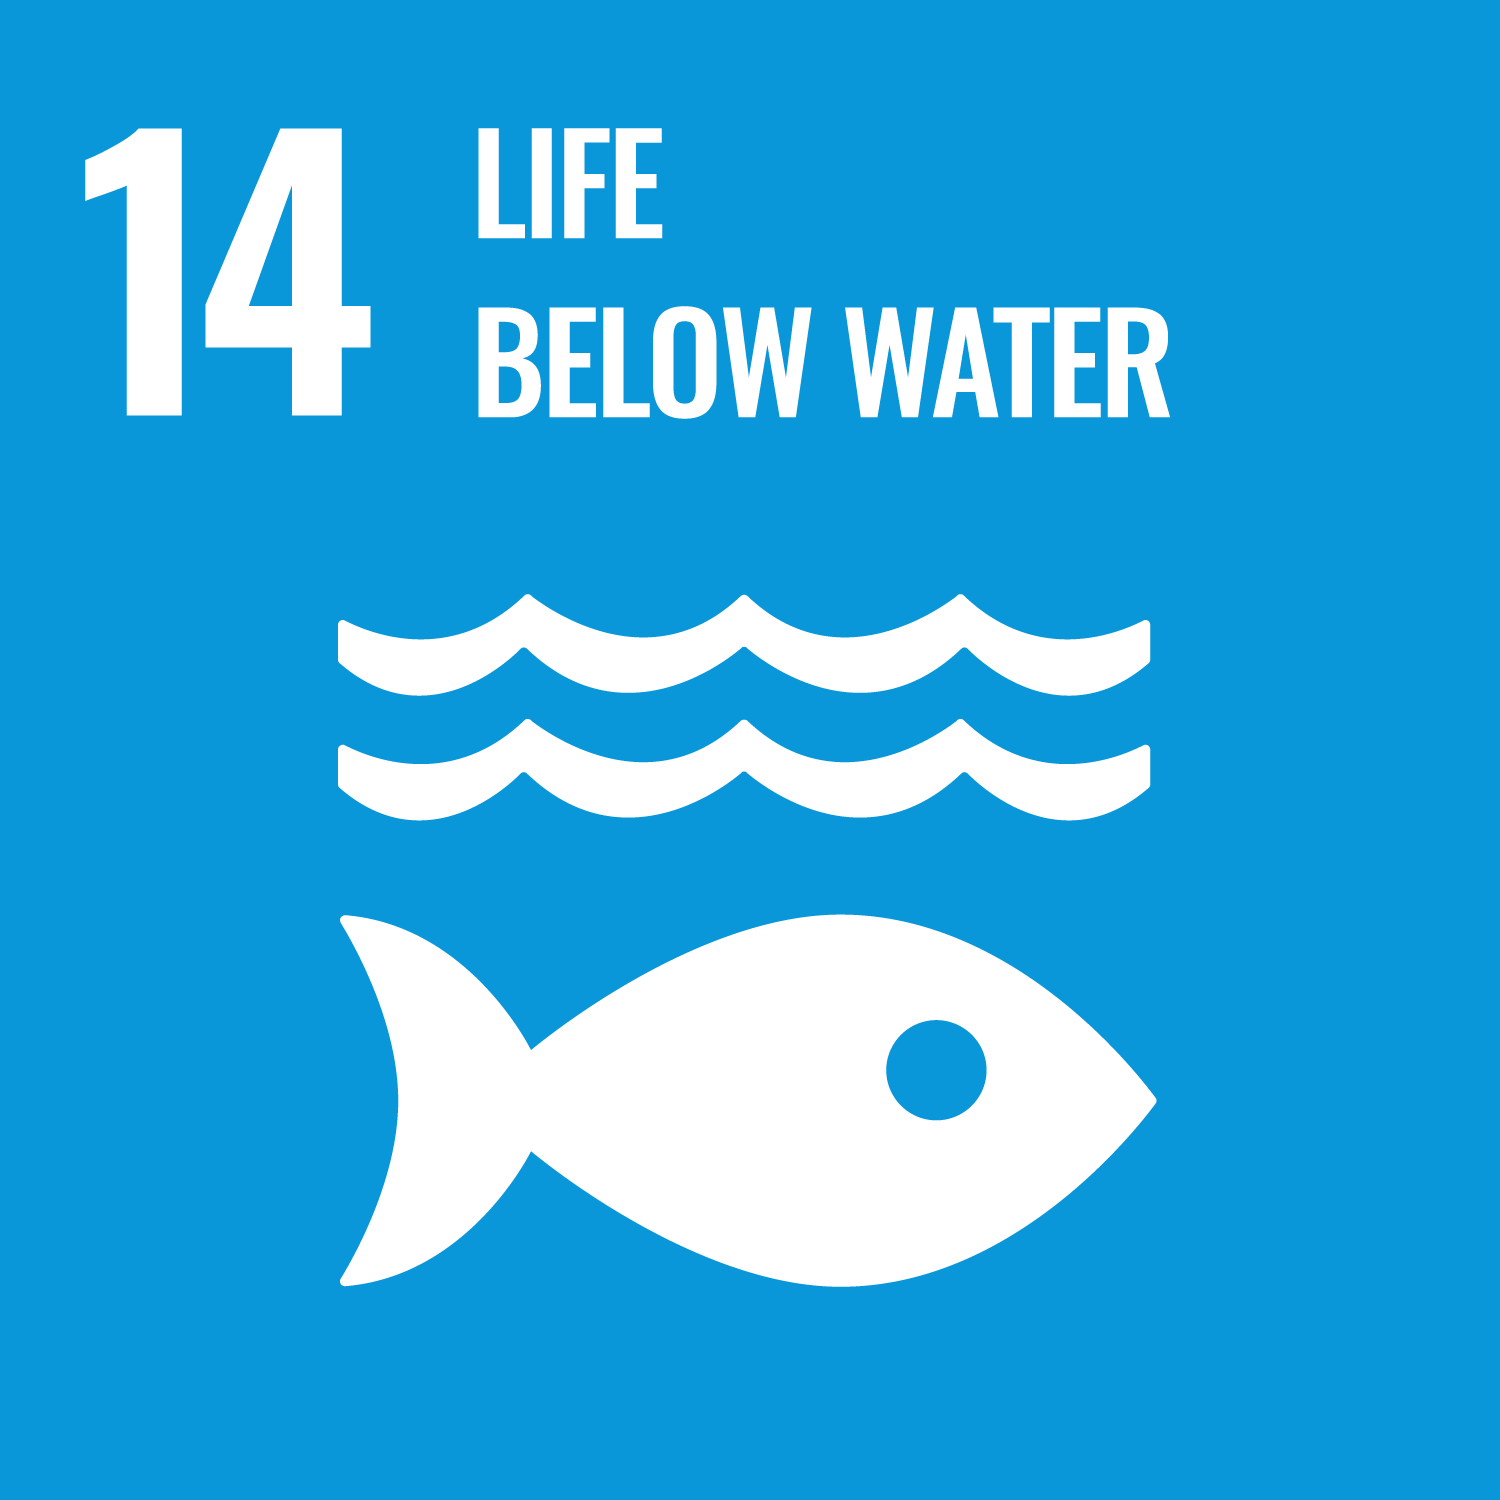 UN Sustainable goal - Life below water